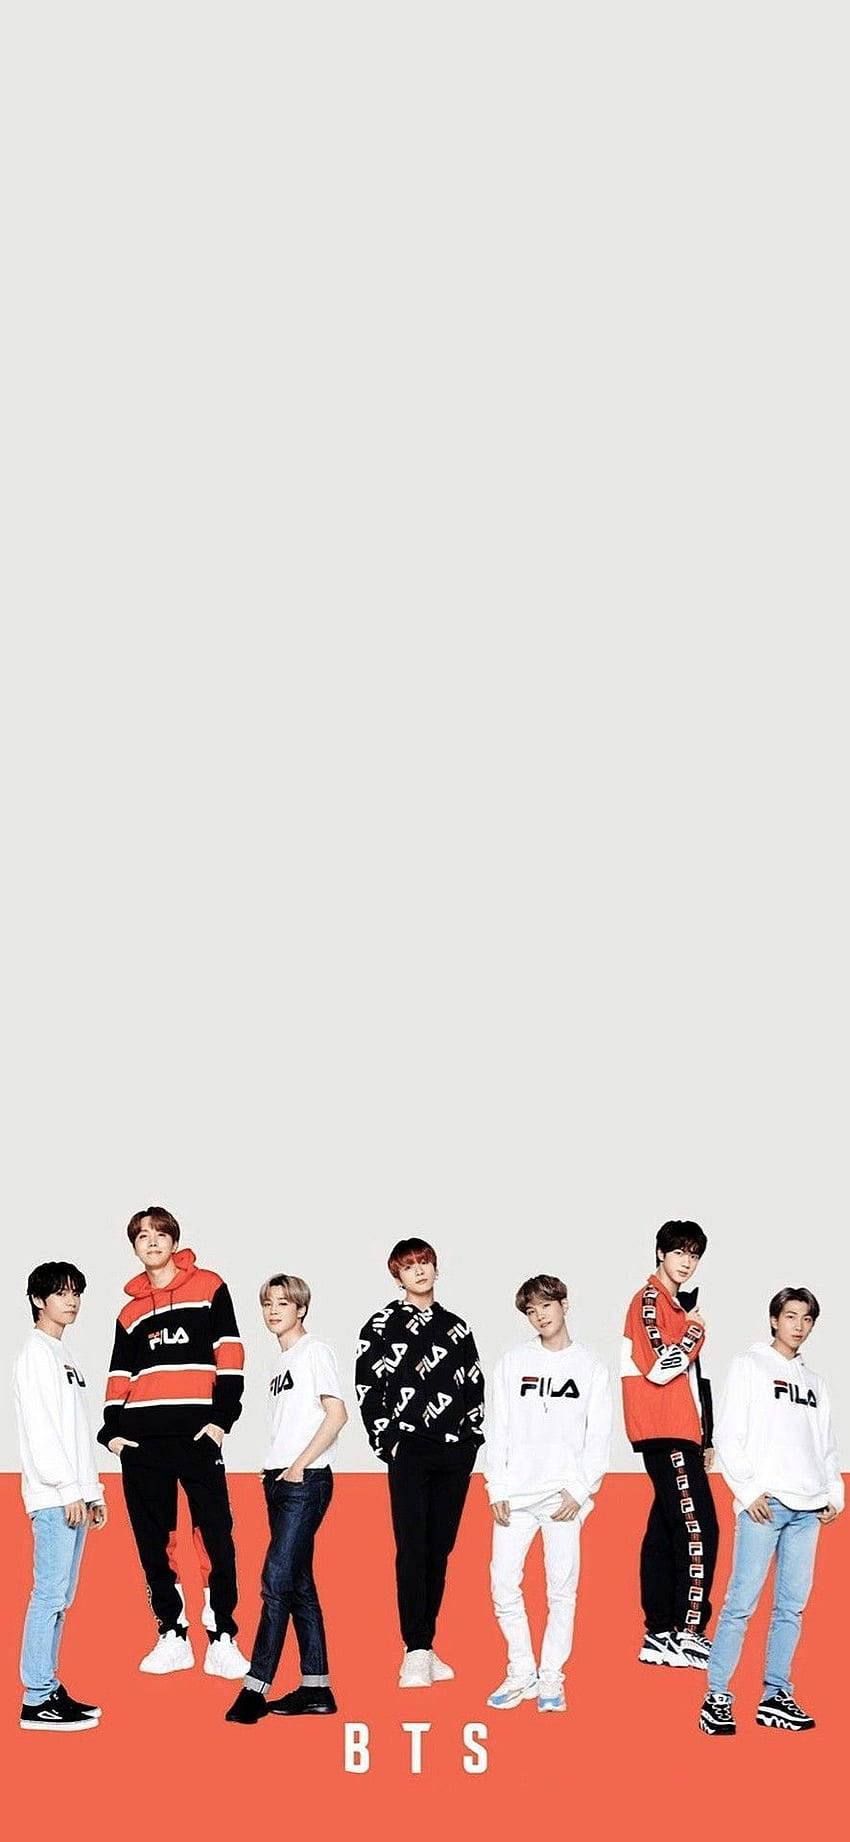 Fila BTS Members Wallpaper